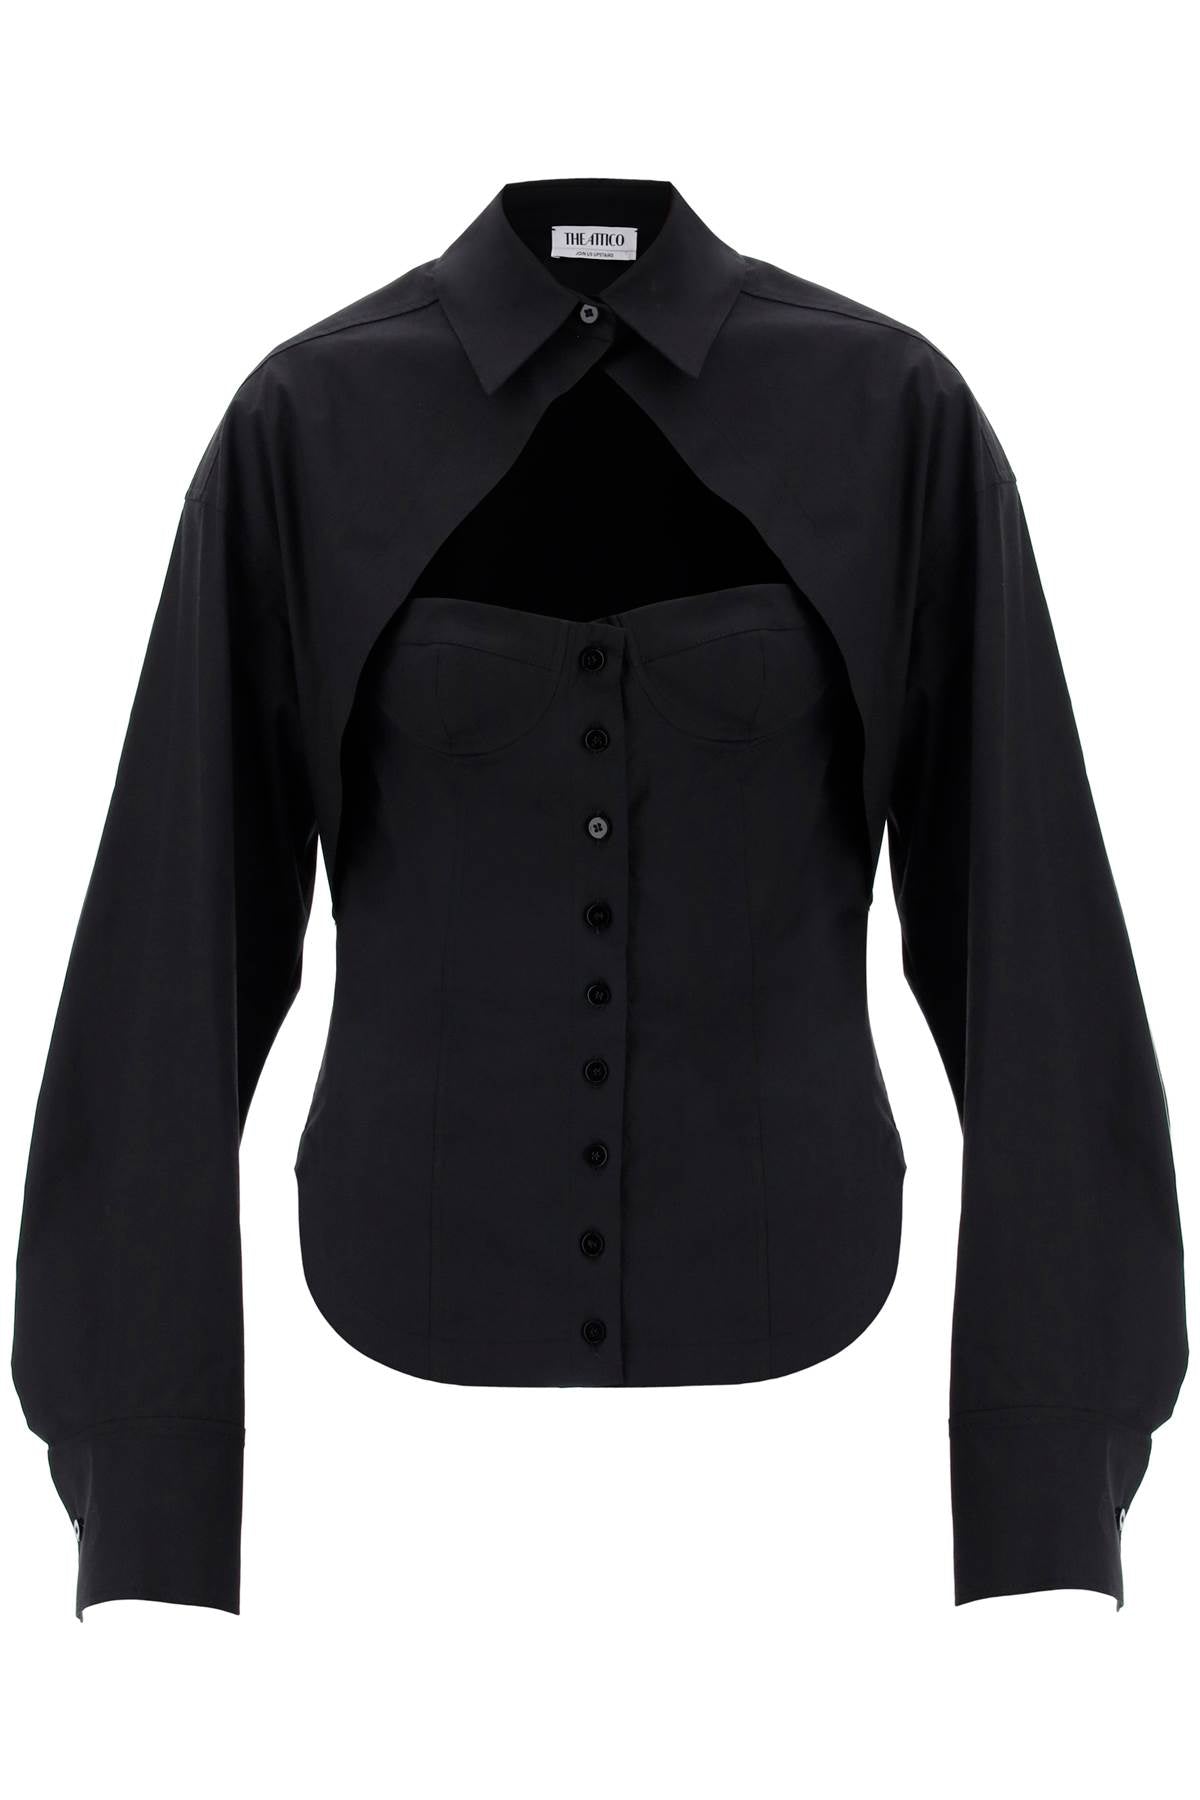 女装黑色棉质Poplin胸衣衬衫- FW23系列